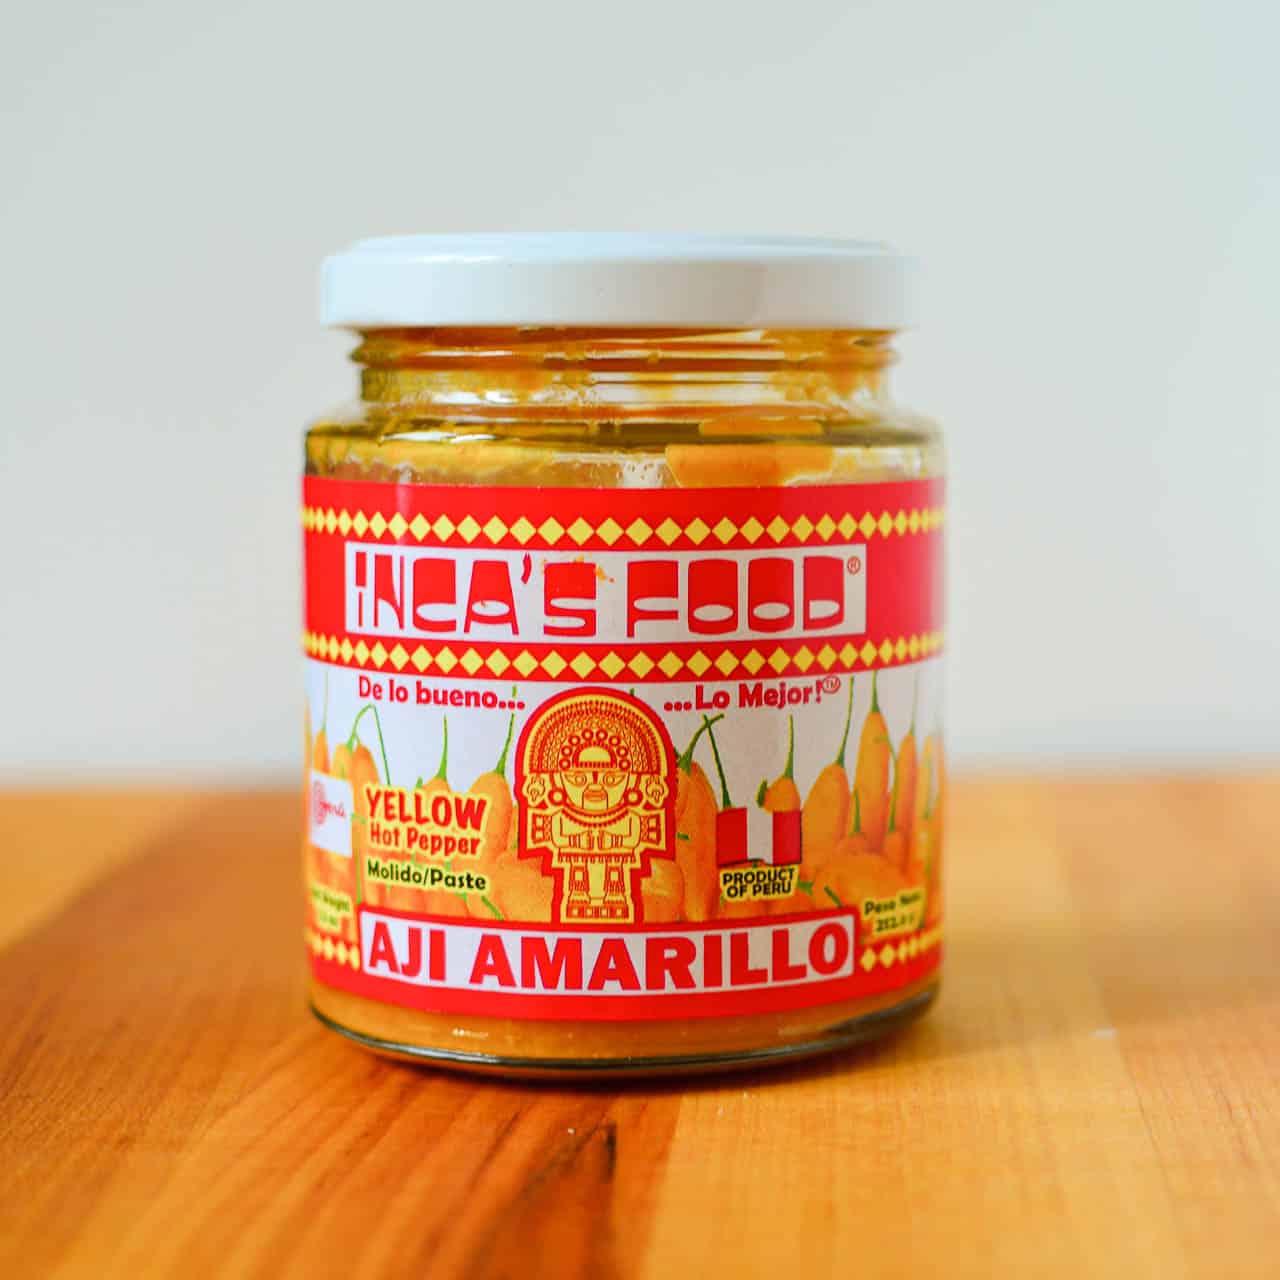 A jar of Aji Amarillo paste